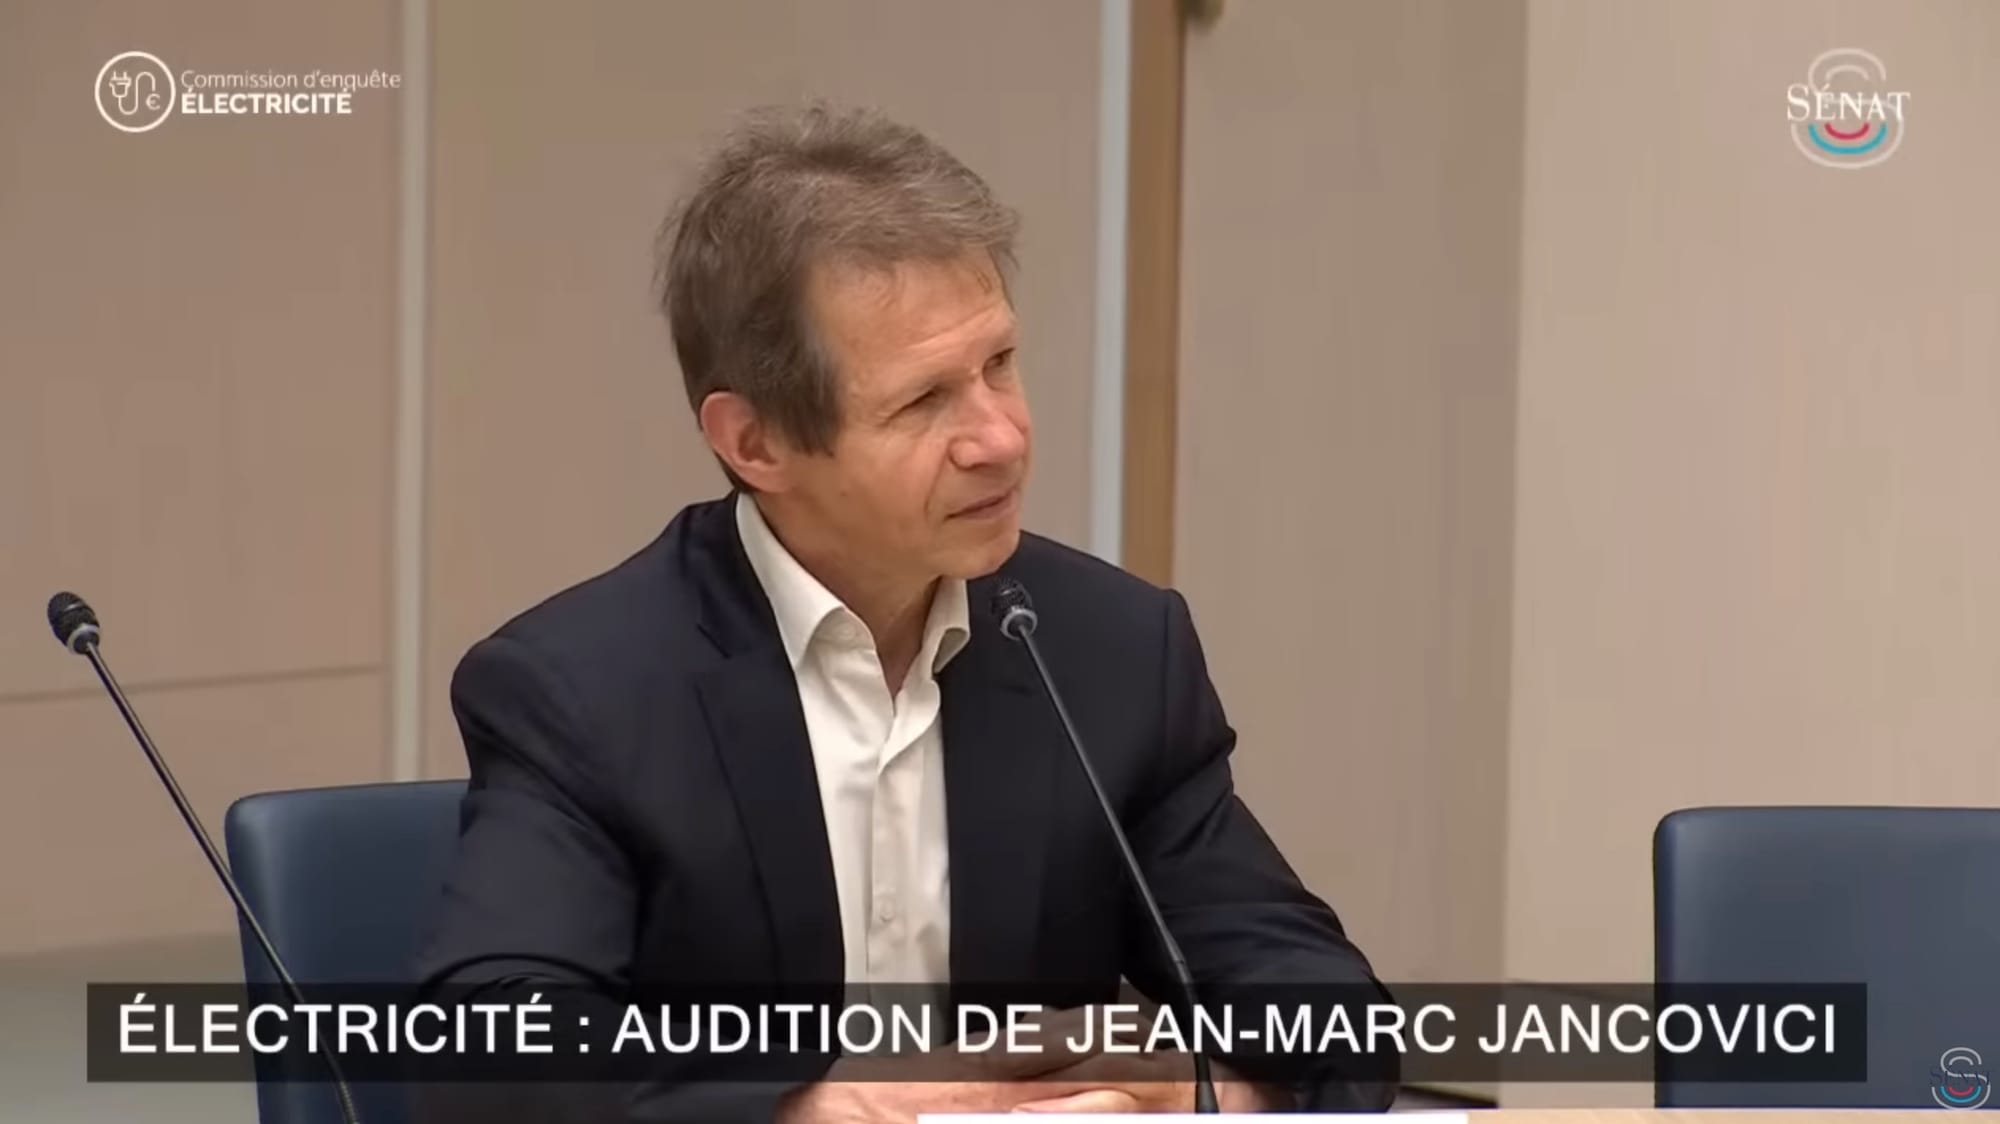 Electricité, audition de Jean-Marc Jancovici - Sénat